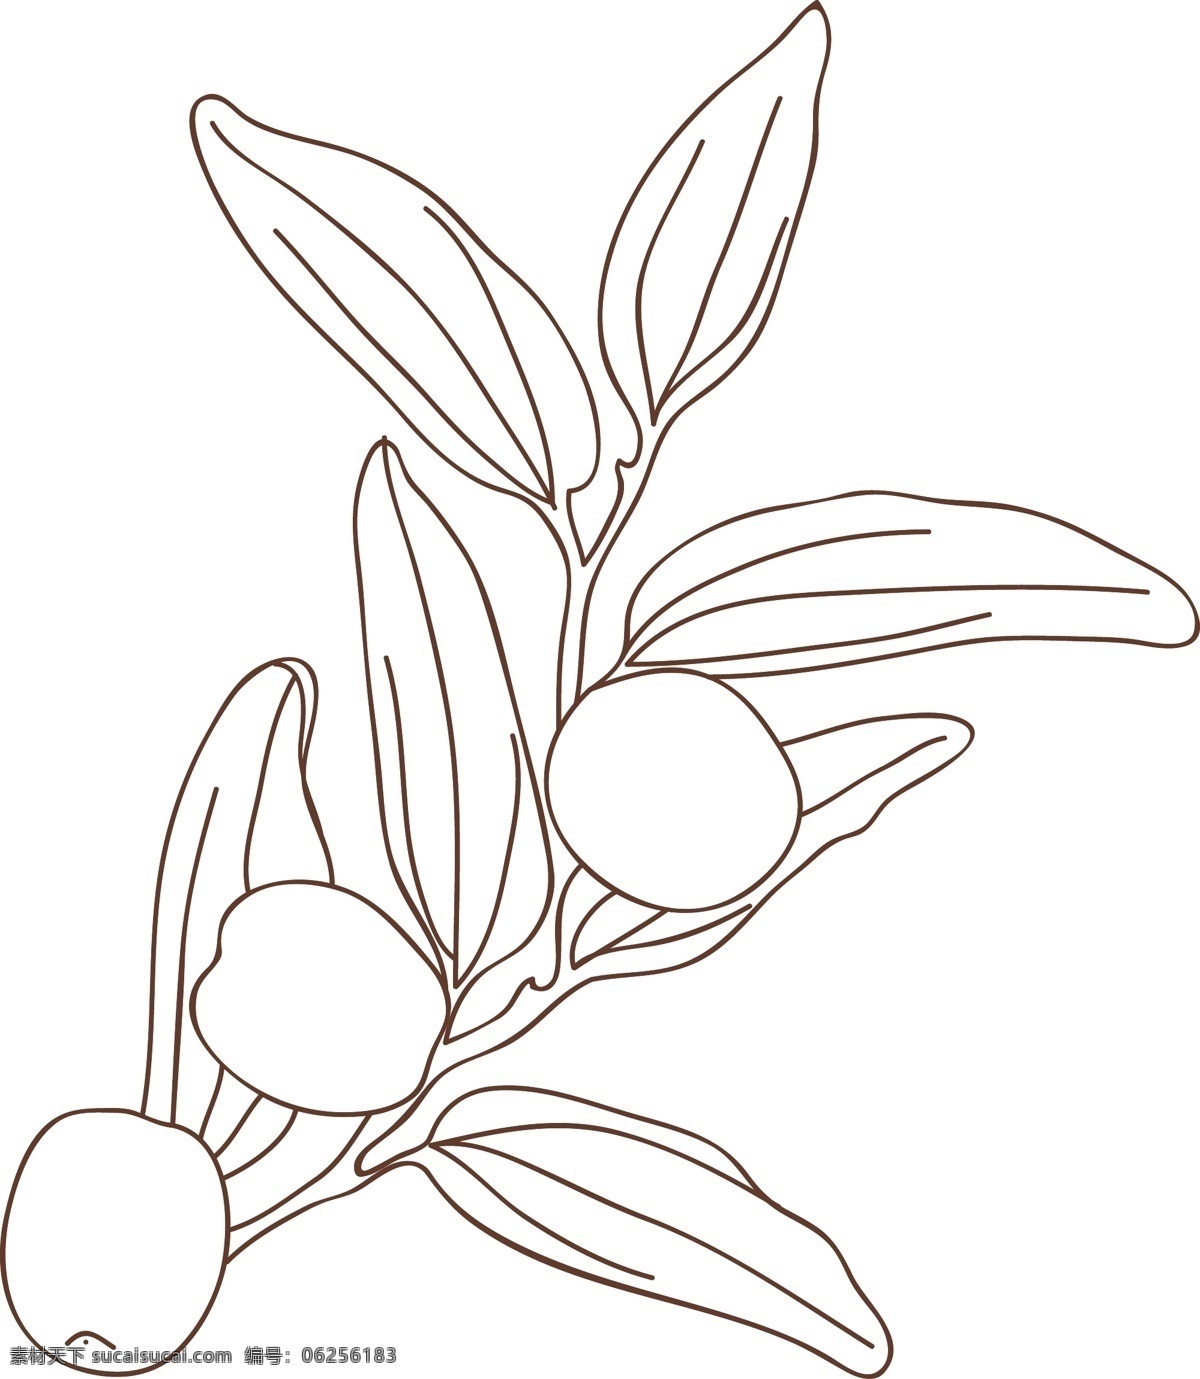 红枣 手绘 线 稿 图 水果 矢量 线稿